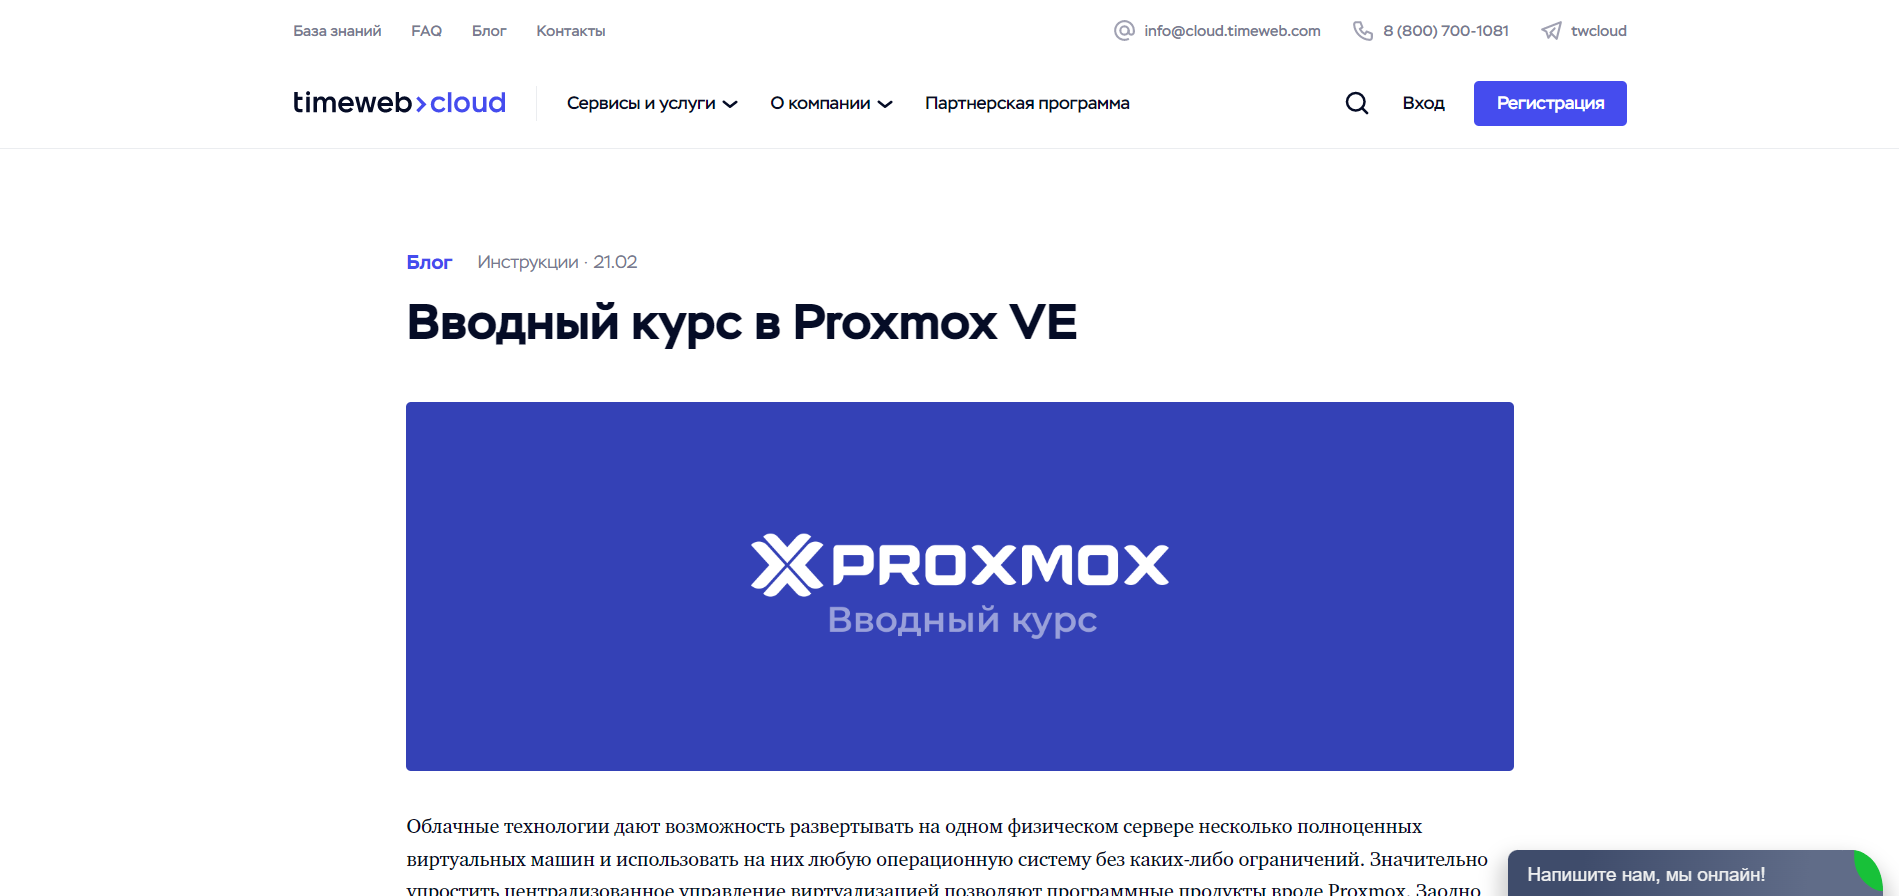 Вводный курс в Proxmox VE